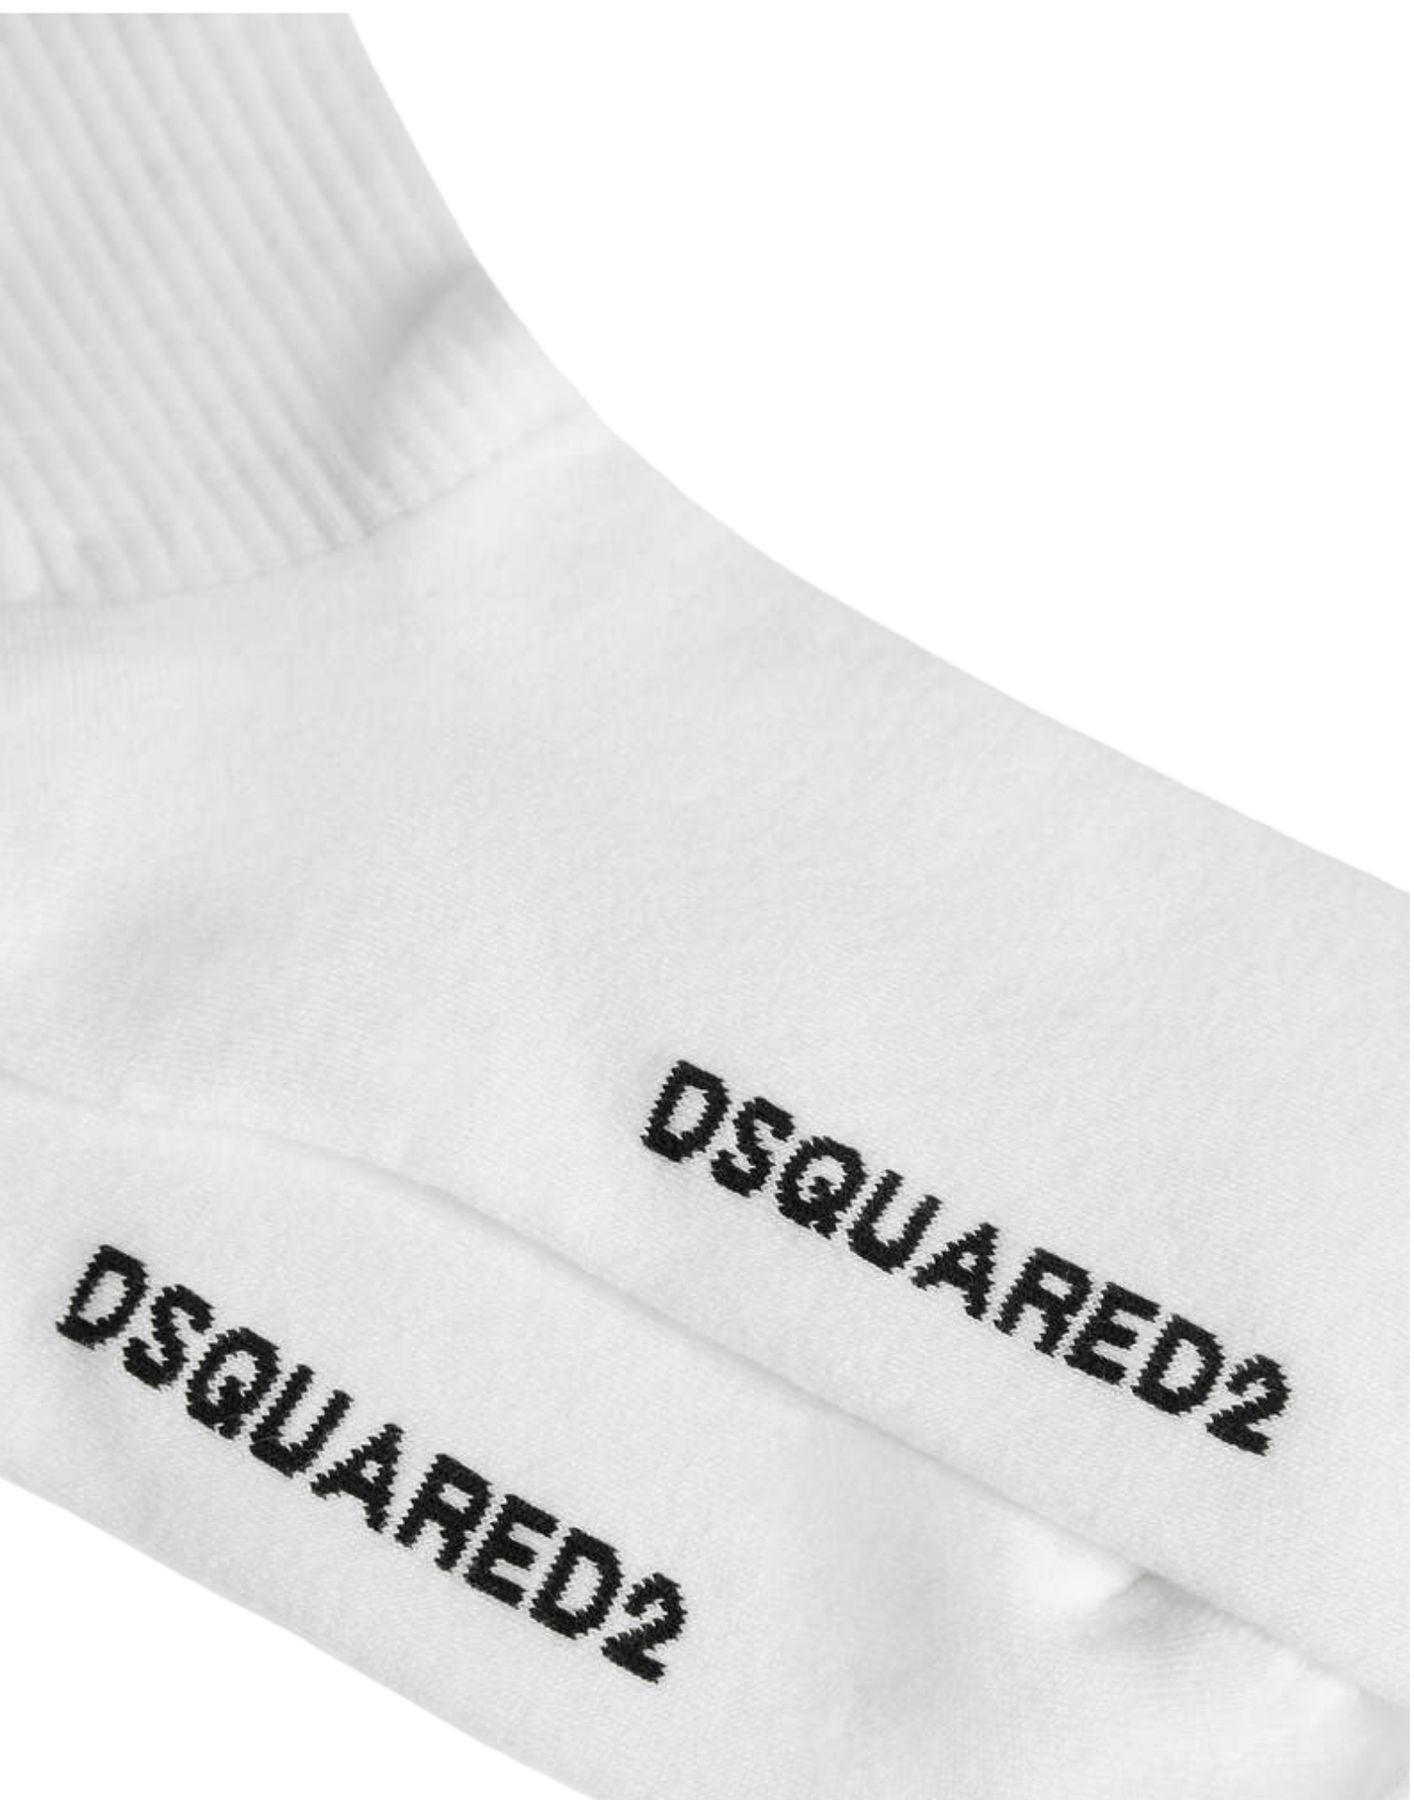 Socken für Mann dfv143020 weiß/rot DSQUARED2